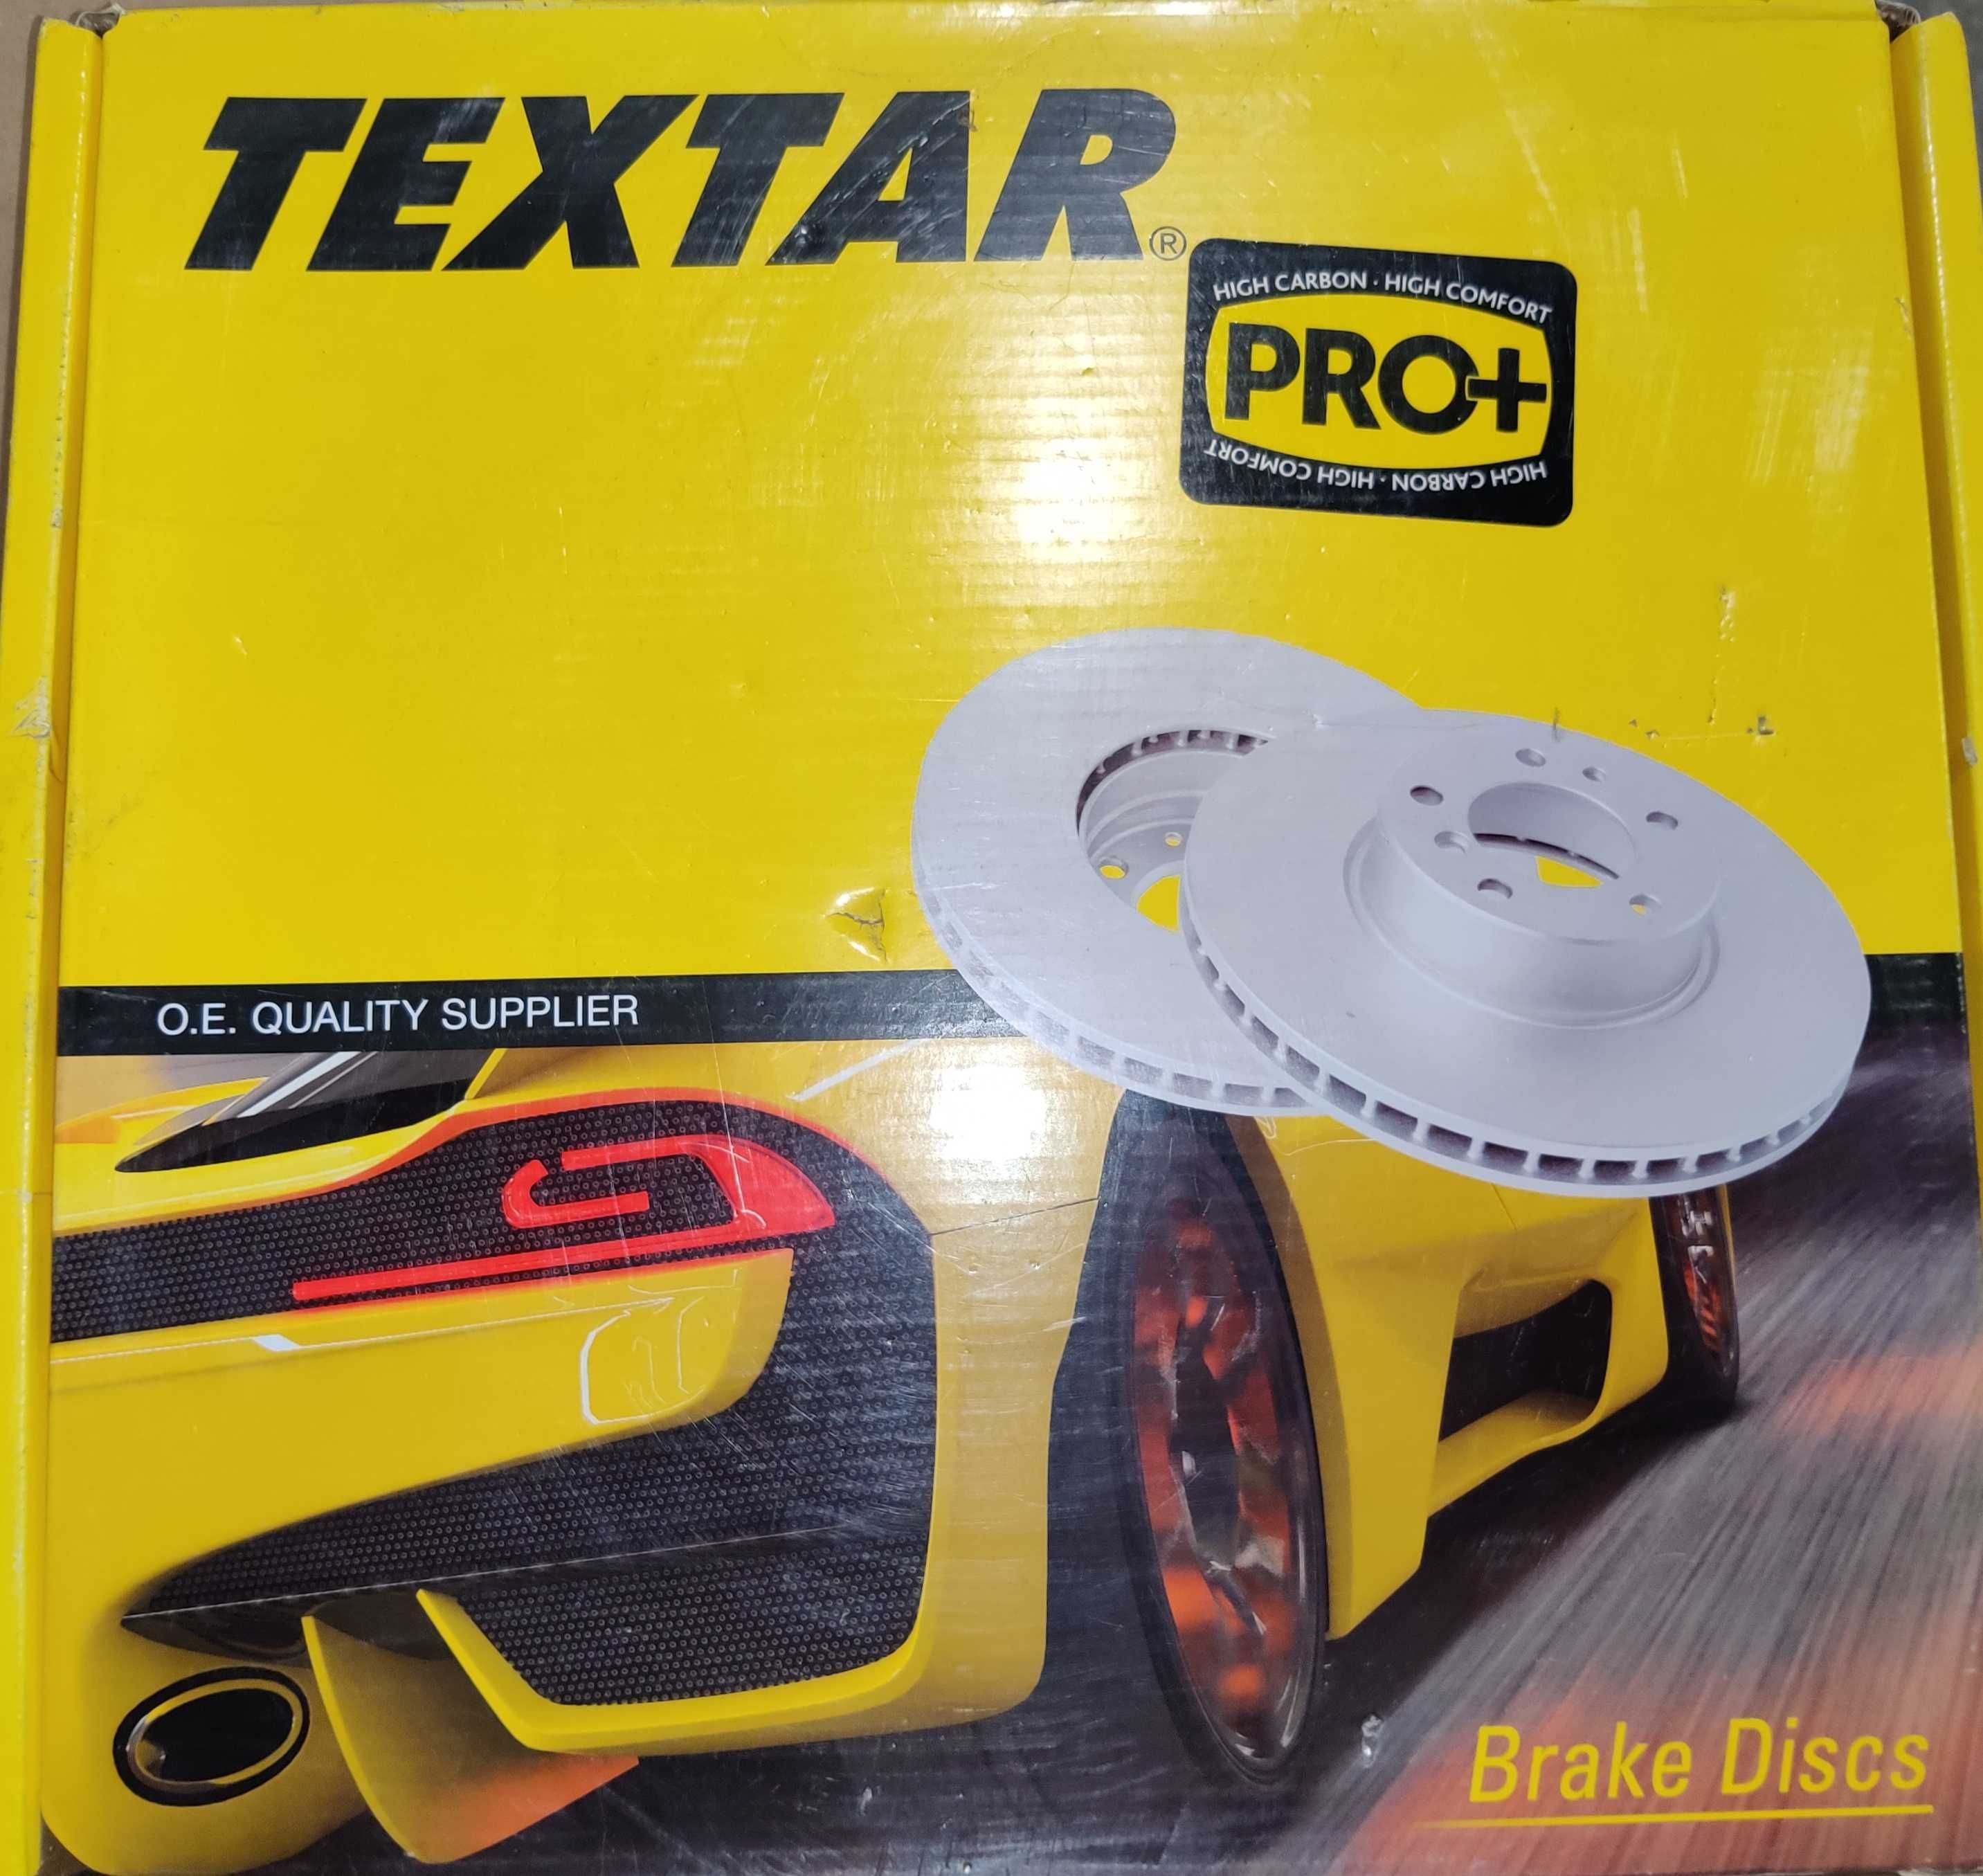 Тормозной диск вентилируемый, PRO Textar 92106705 (пара)